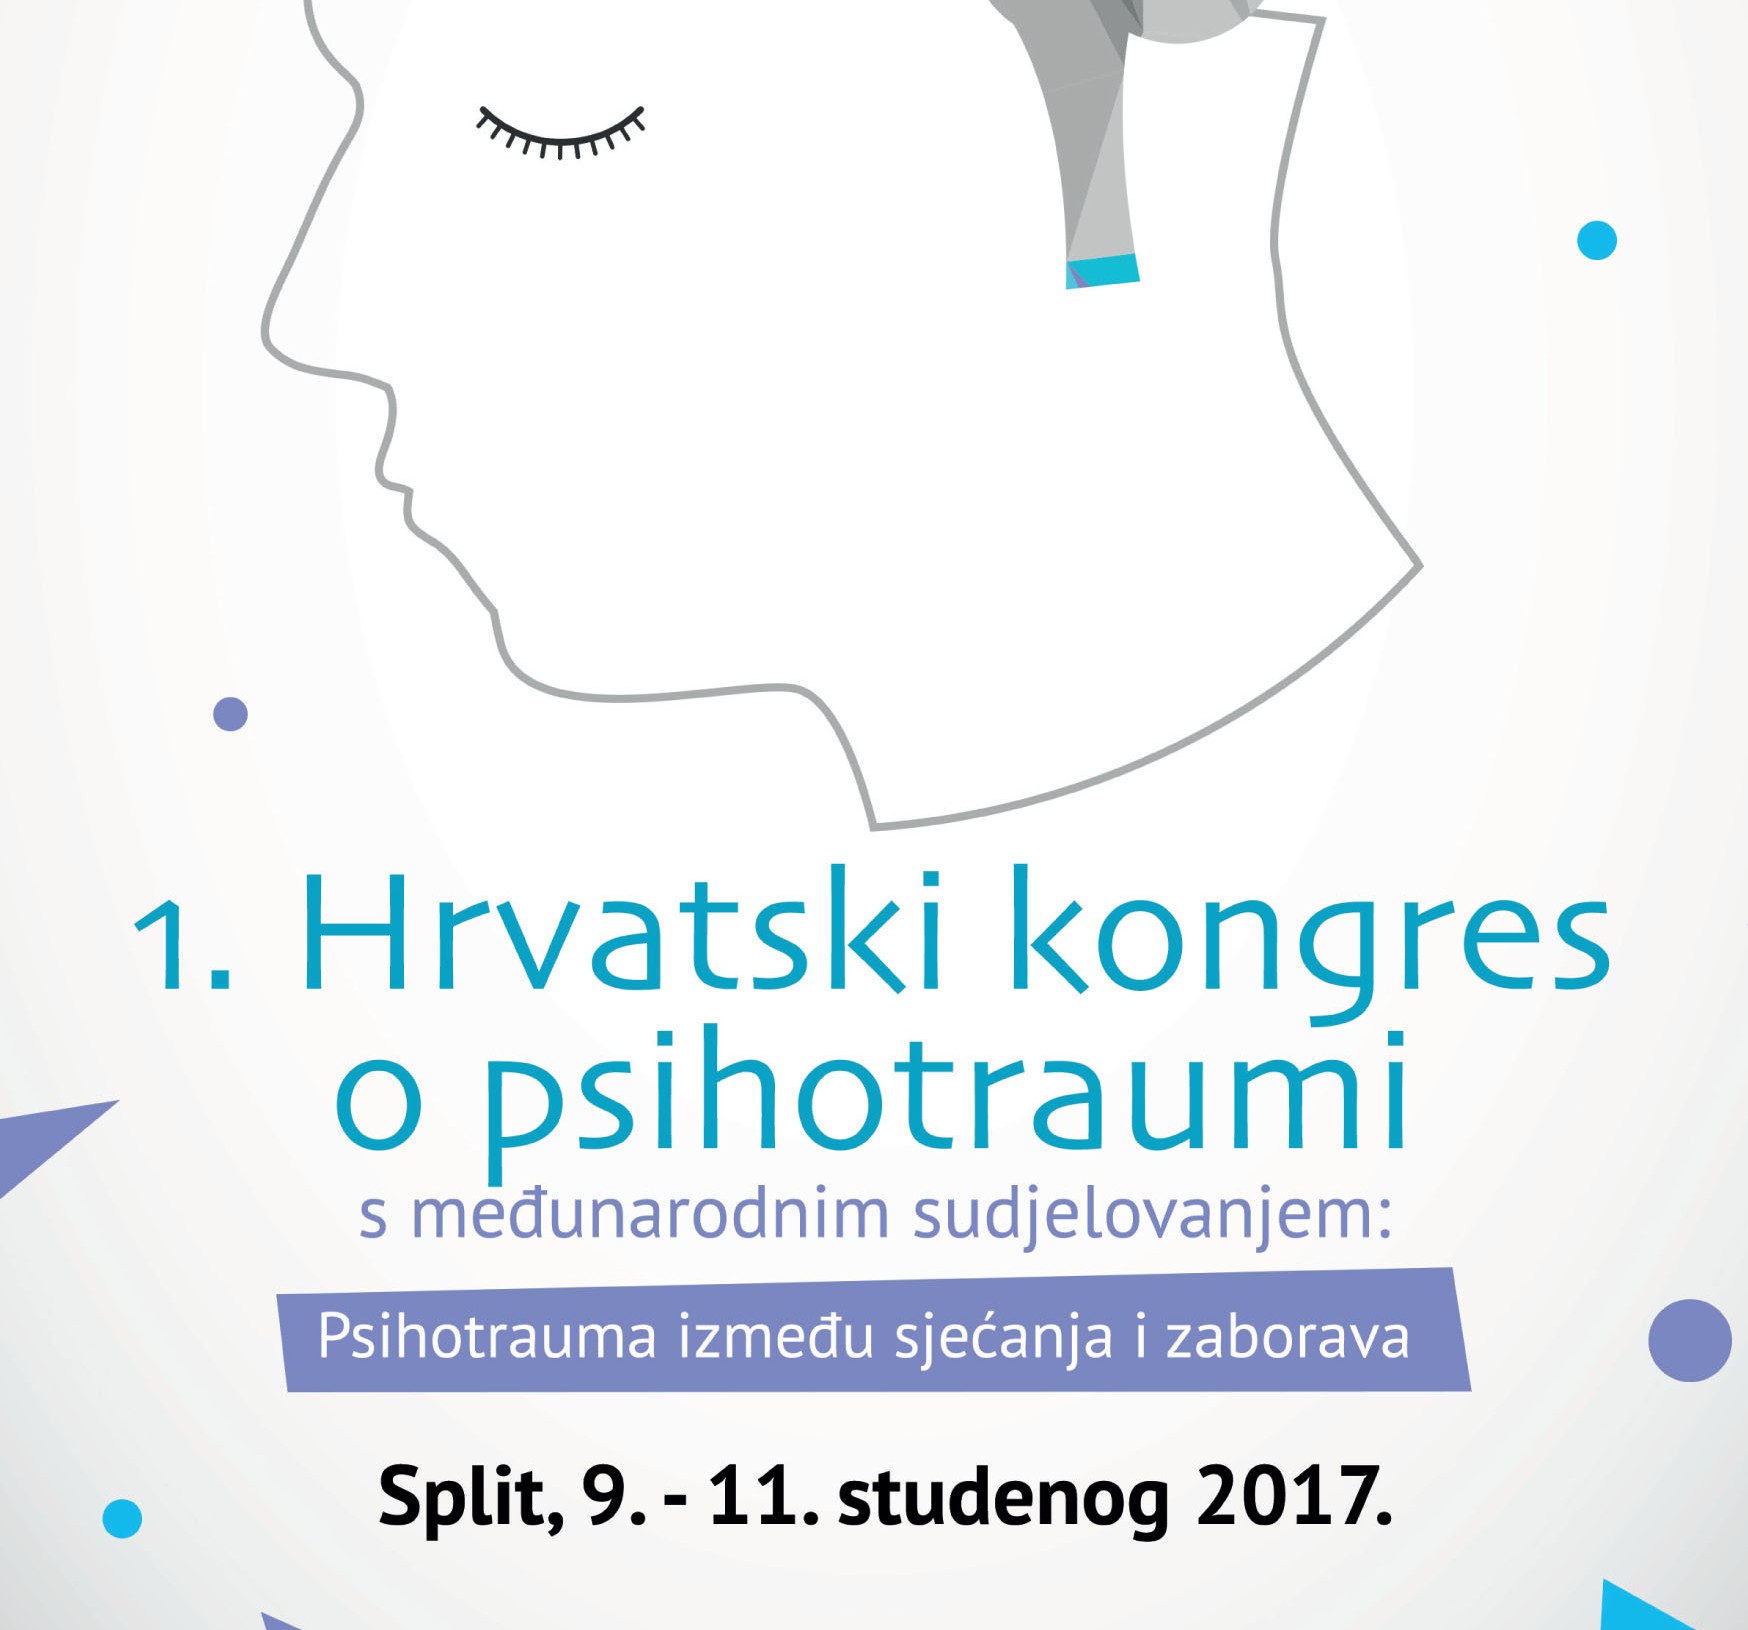 1. HRVATSKI KONGRES O PSIHOTRAUMI: Psihotrauma između sjećanja i zaborava, Split, 9.-11. studenog 2017.